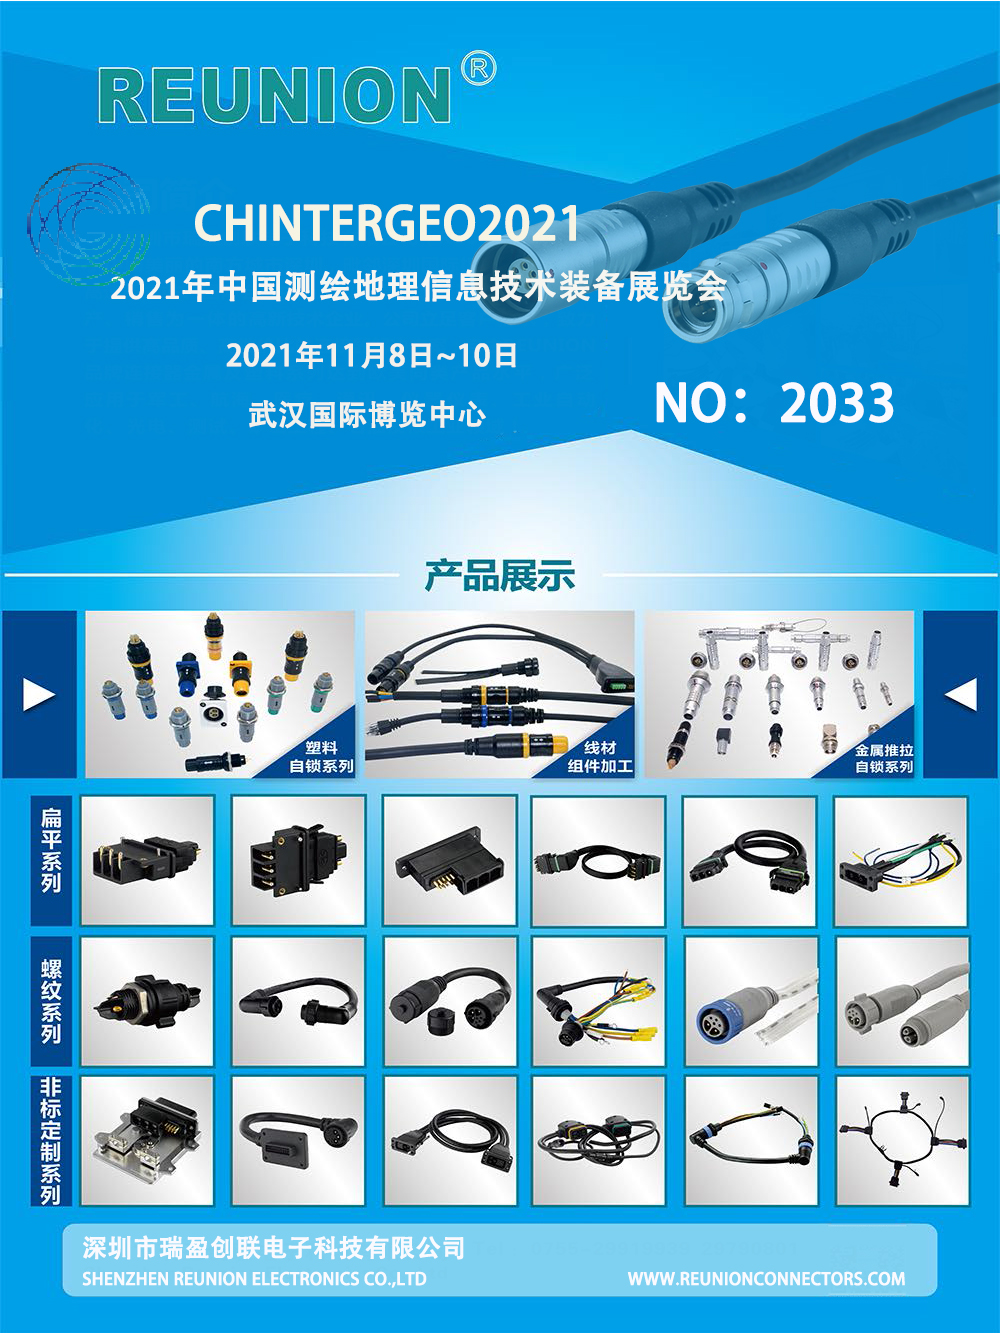 2021中国测绘地理信息技术装备展览会CHINTERGEO - REUNION Connectors